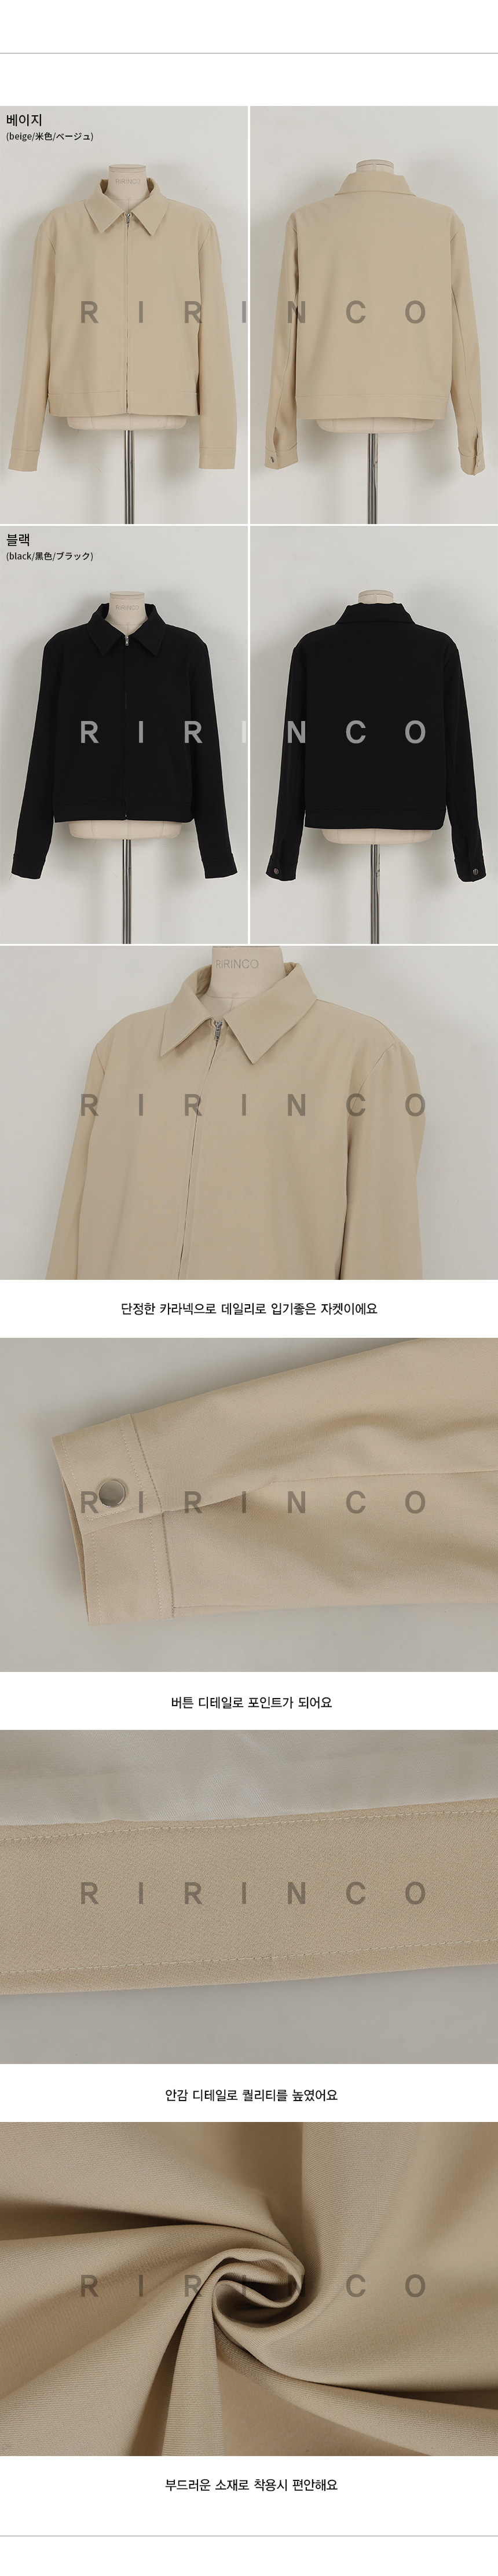 RIRINCO カラーネックオールジップアップジャケット